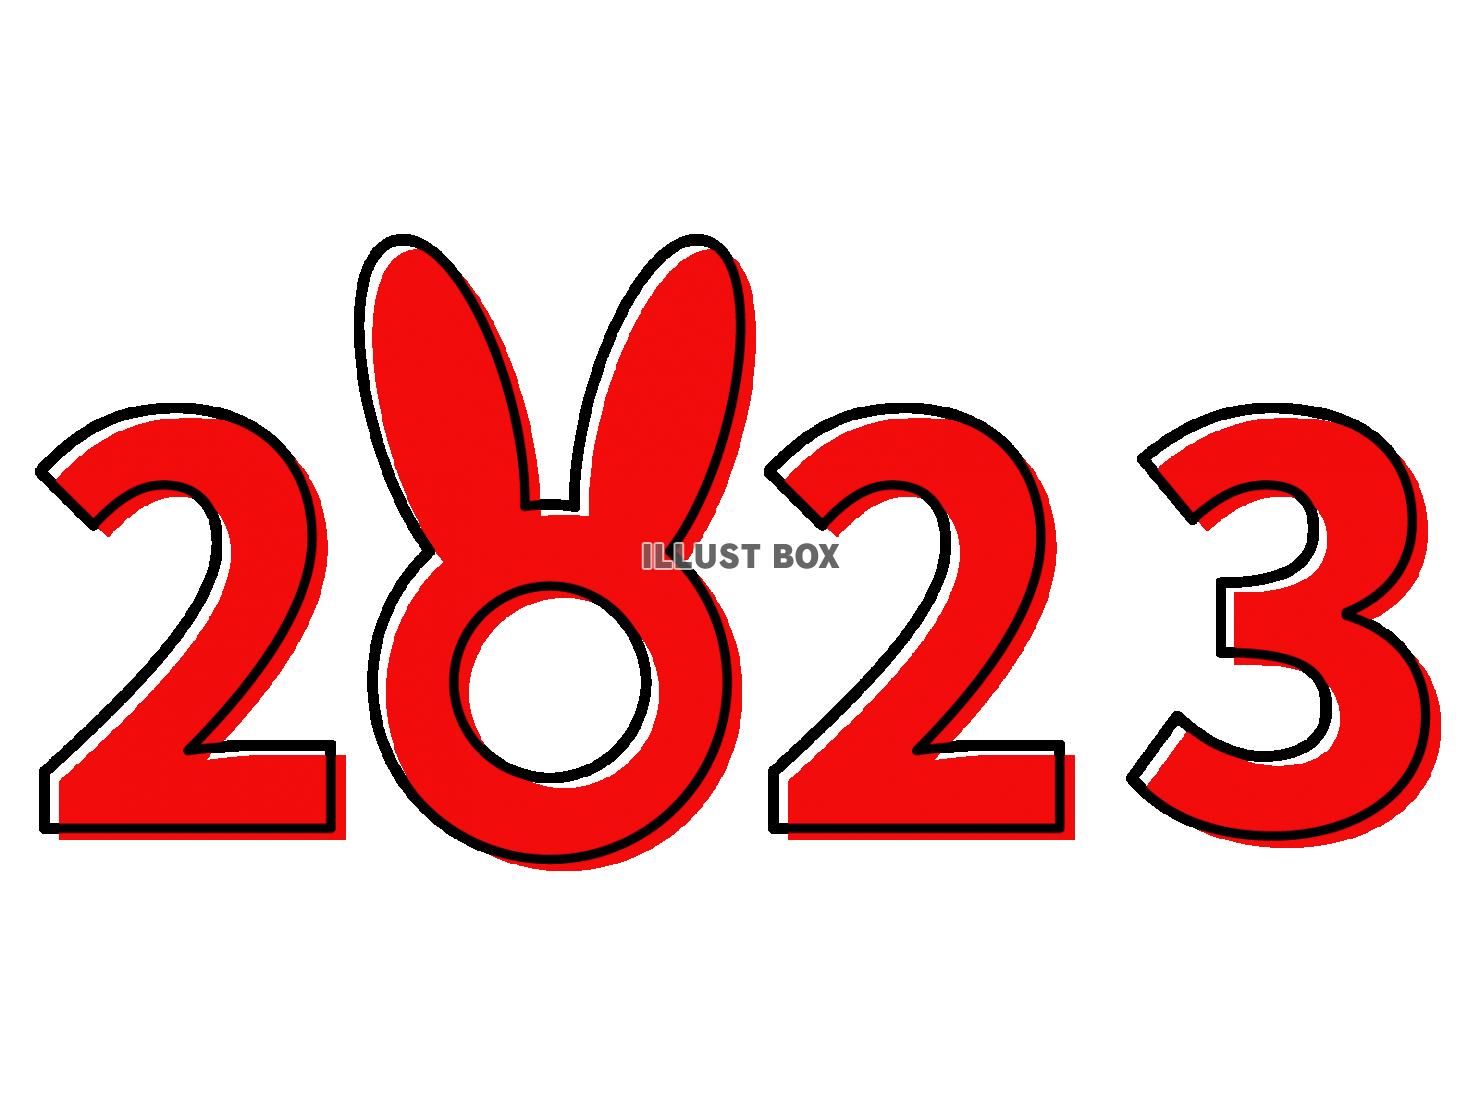 卯年の年賀状素材・2023年ロゴ【透過PNG・EPS】